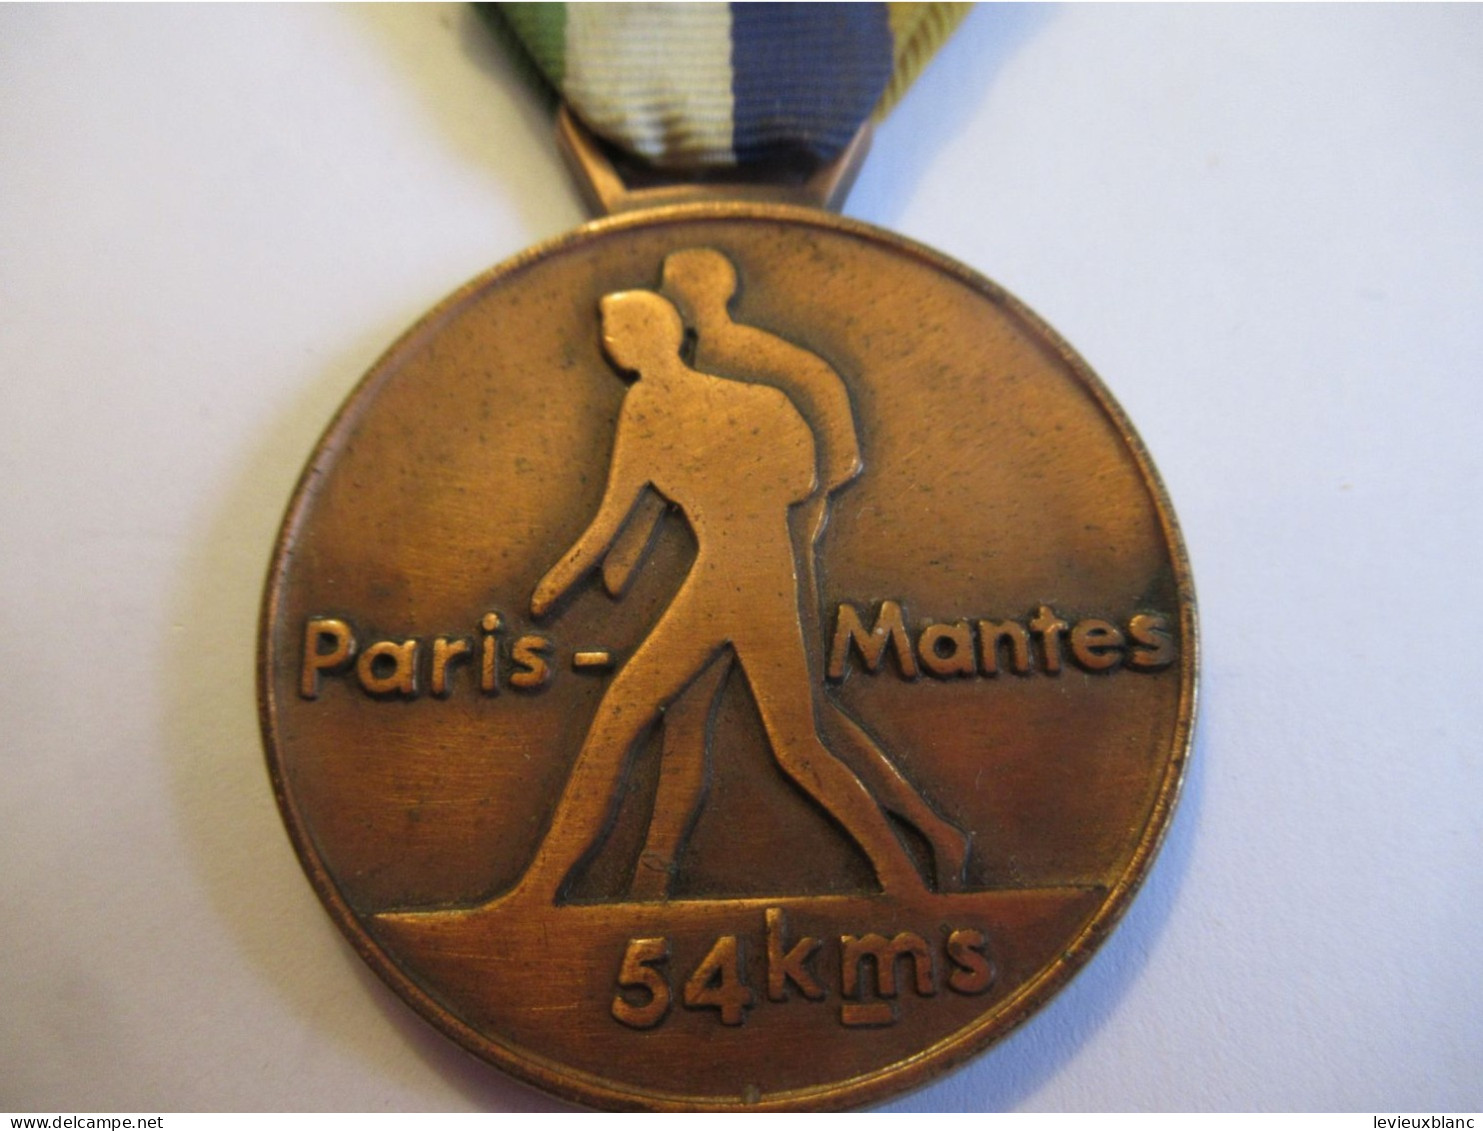 MARCHE / Paris - Mantes / 54 Km /  A S T - A S M / Cuivre / Cloisonné/ Vers  1960 -1970                SPO438 - Athletics